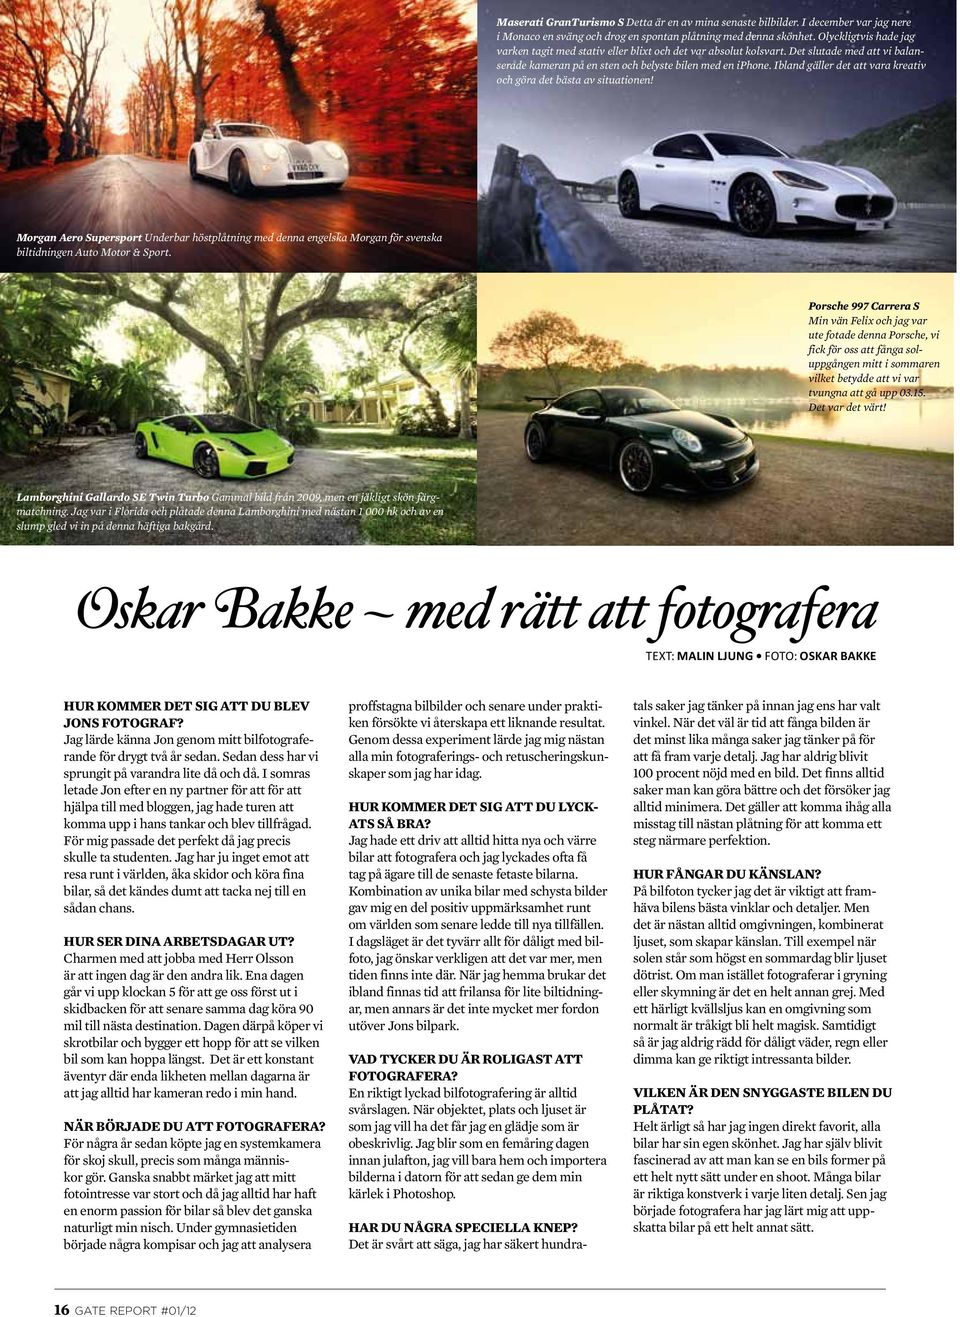 Ibland gäller det att vara kreativ och göra det bästa av situationen! Morgan Aero Supersport Underbar höstplåtning med denna engelska Morgan för svenska biltidningen Auto Motor & Sport.